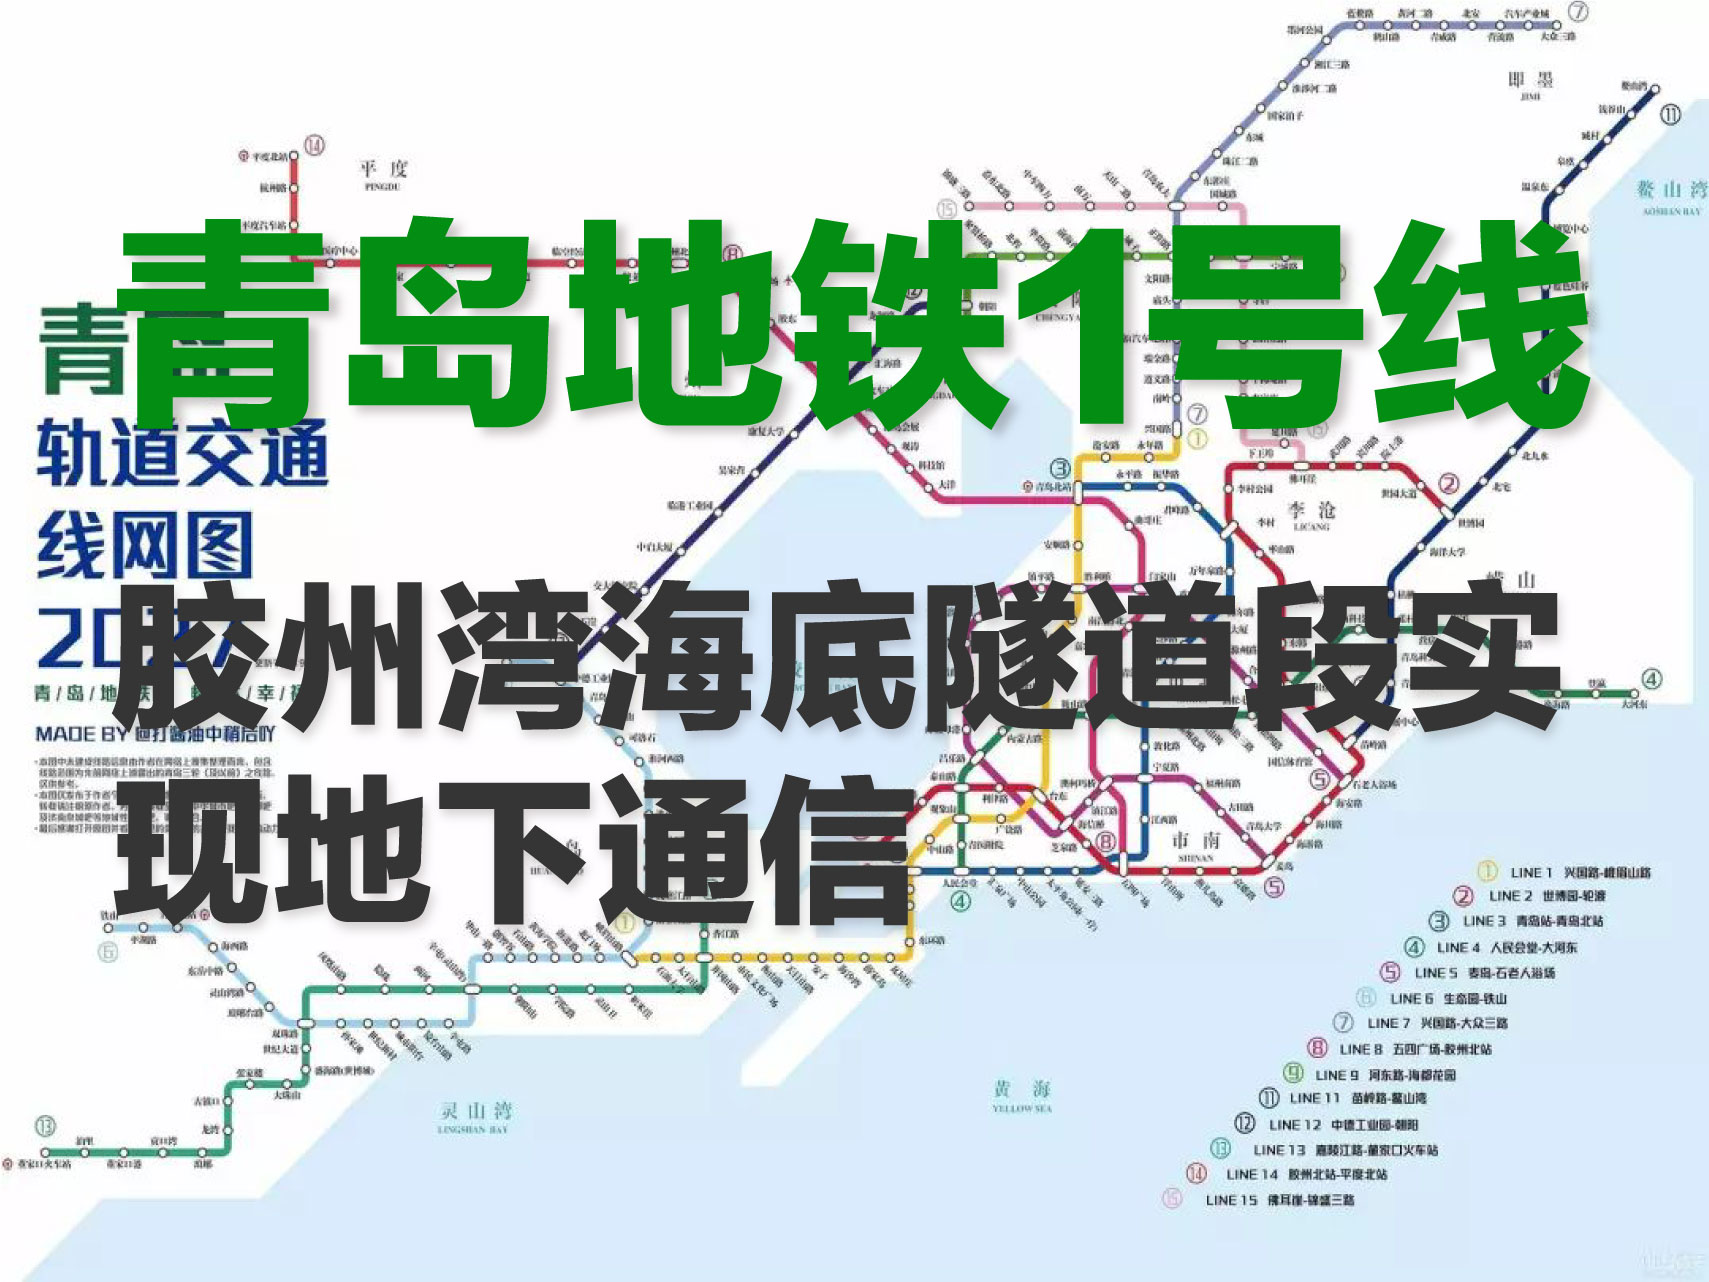 [贝壳快讯] 青岛地铁1号线,胶州湾海底隧道段实现地下通信!